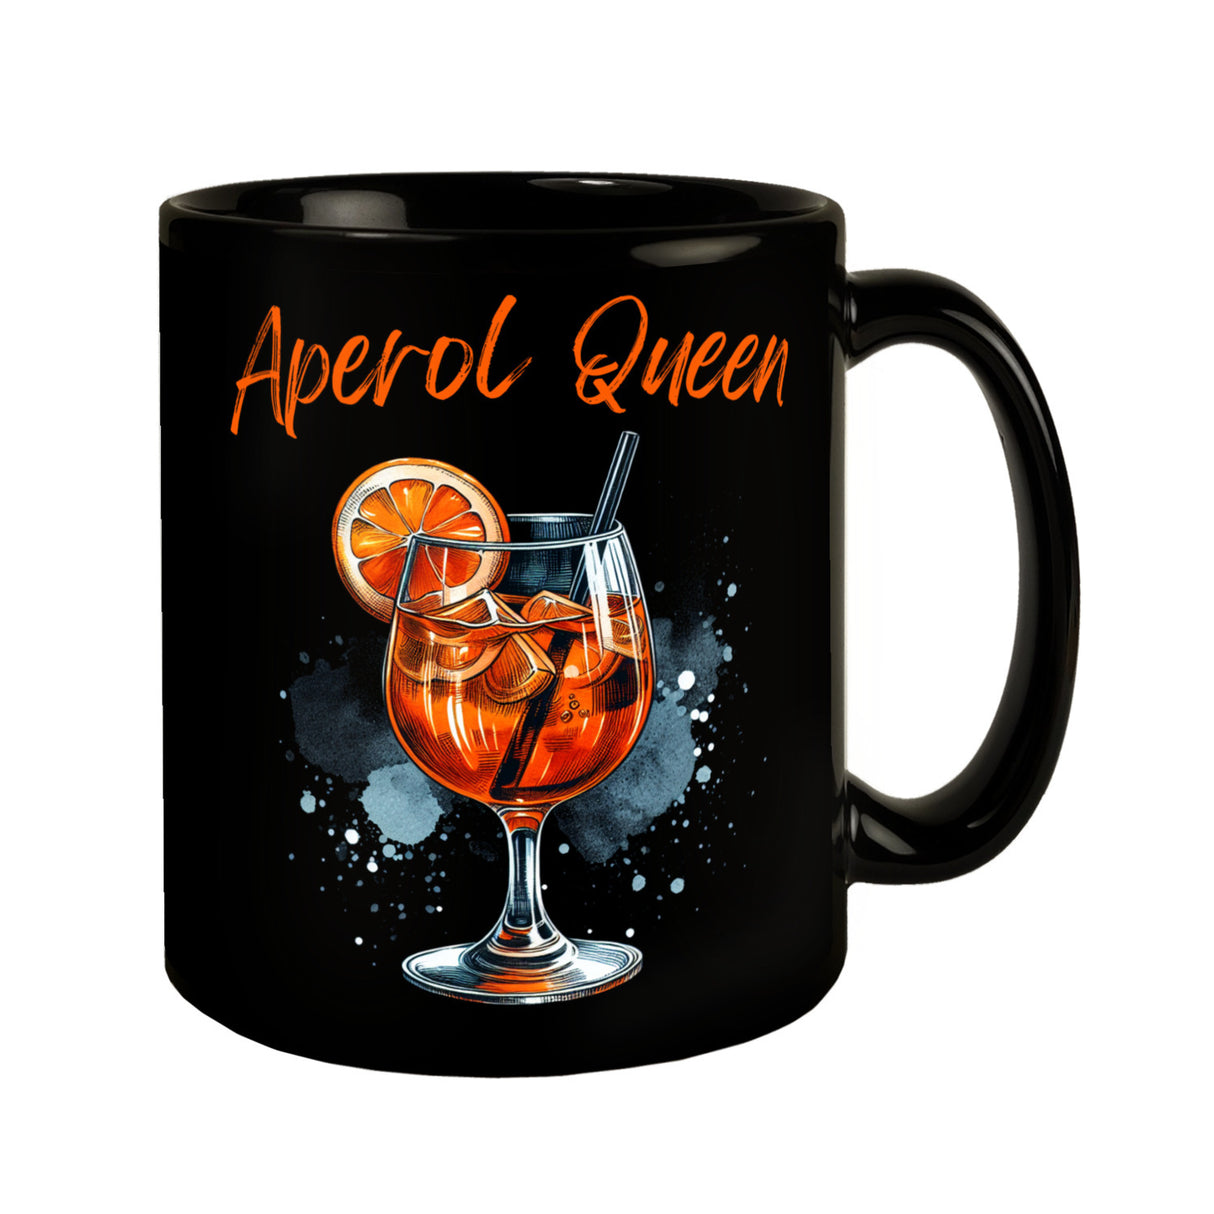 Aperol Queen Tasse in Schwarz